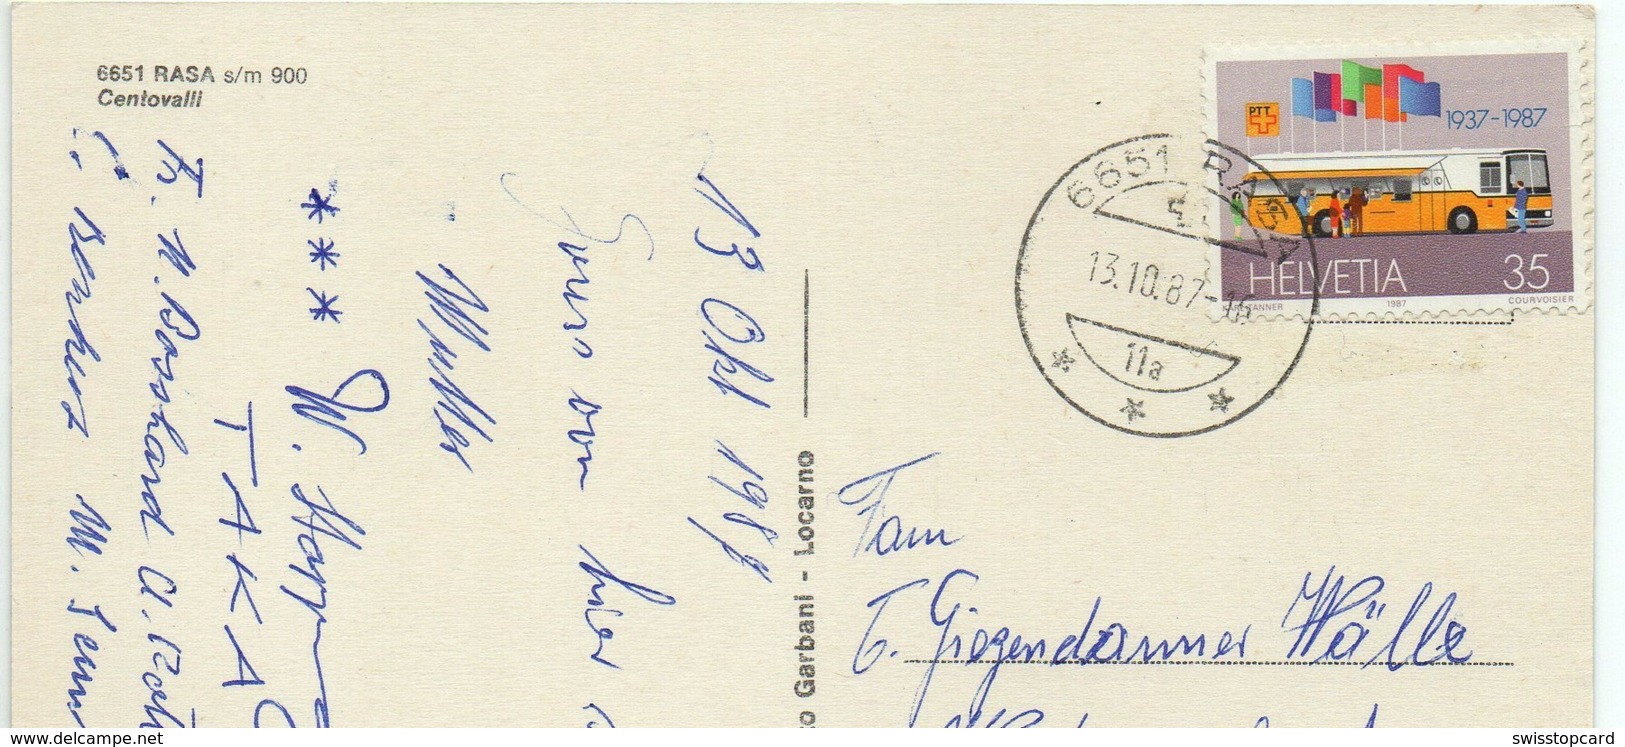 RASA CENTOVALLI Luftseilbahn Gel. 1987 Briefmarke Postauto - Centovalli